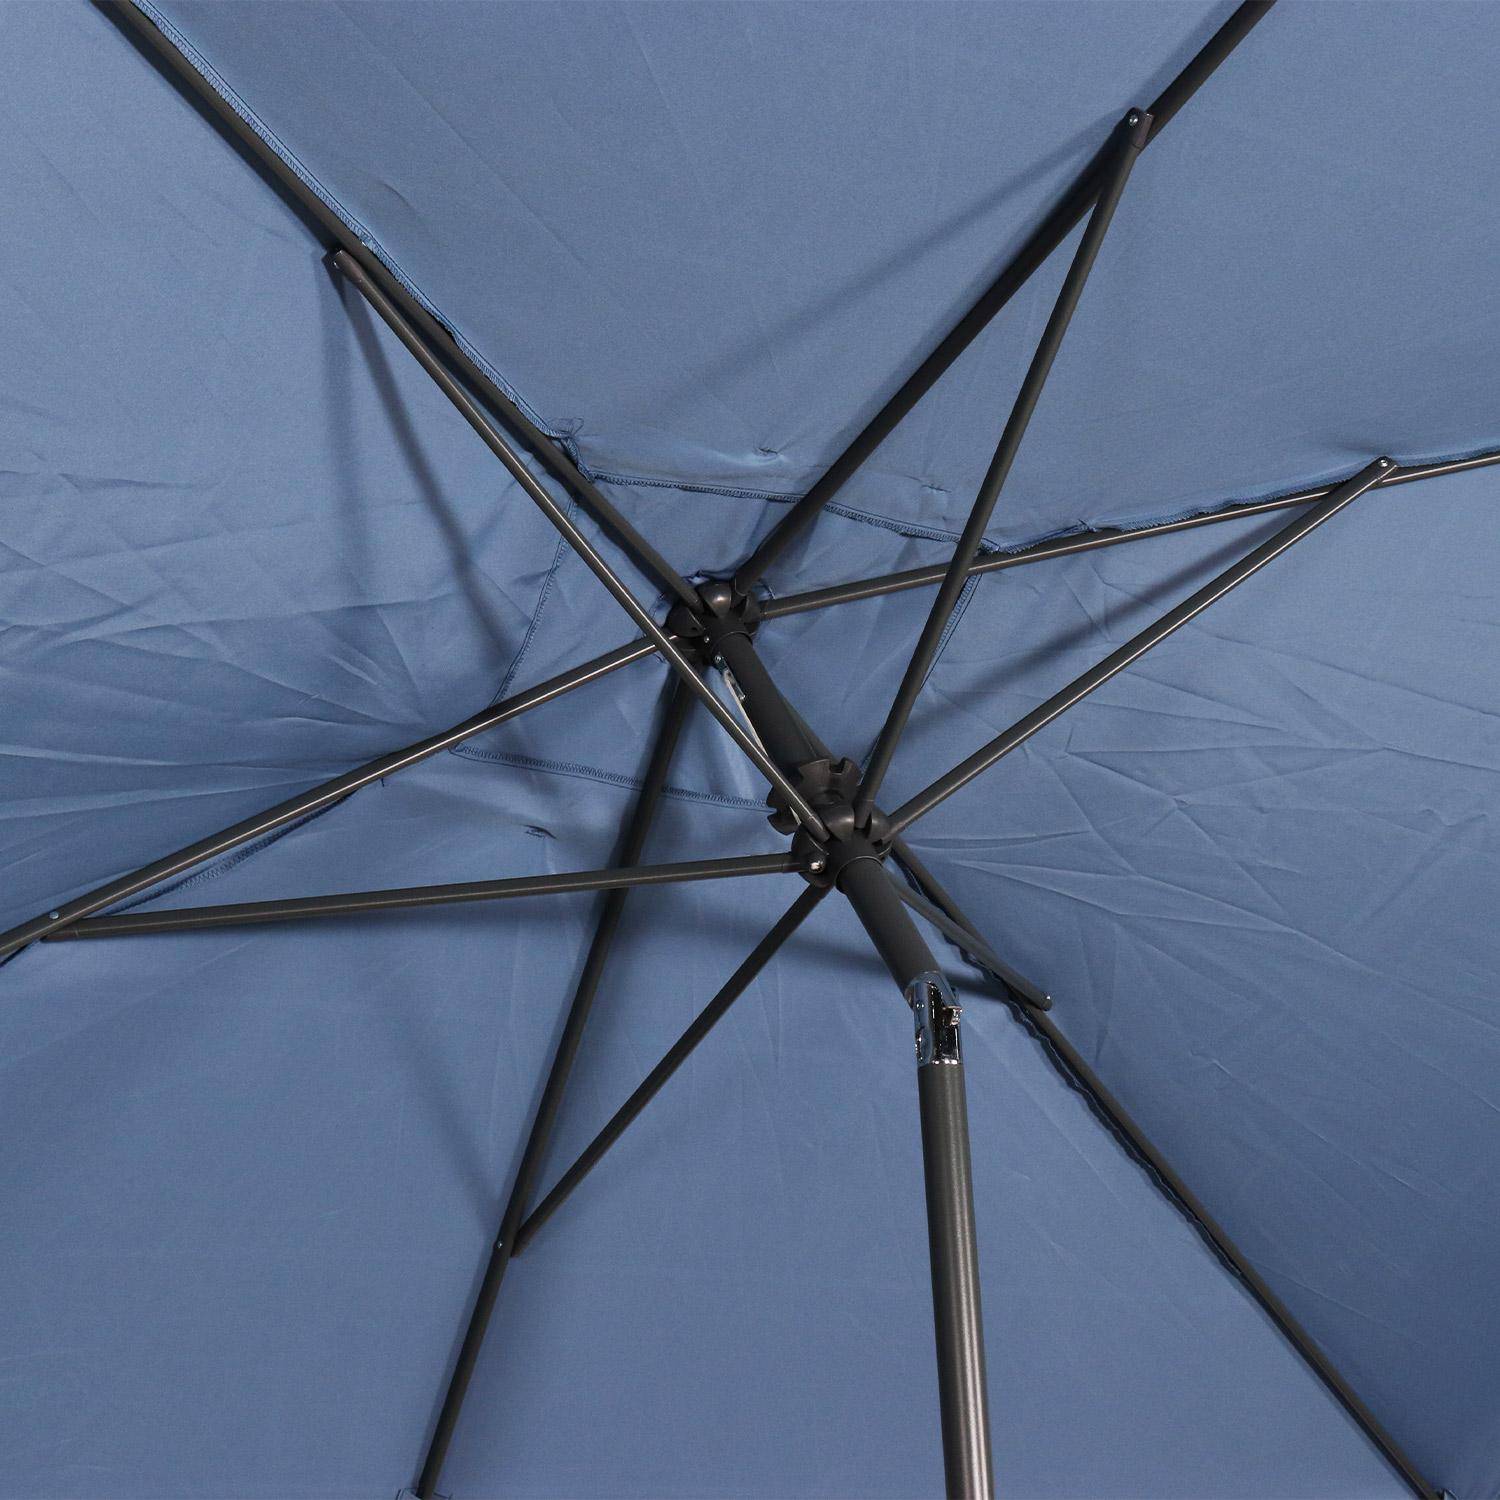 Parasol droit rectangulaire 2x3m - Touquet bleu grisé - mât central en aluminium orientable et manivelle d'ouverture Photo6